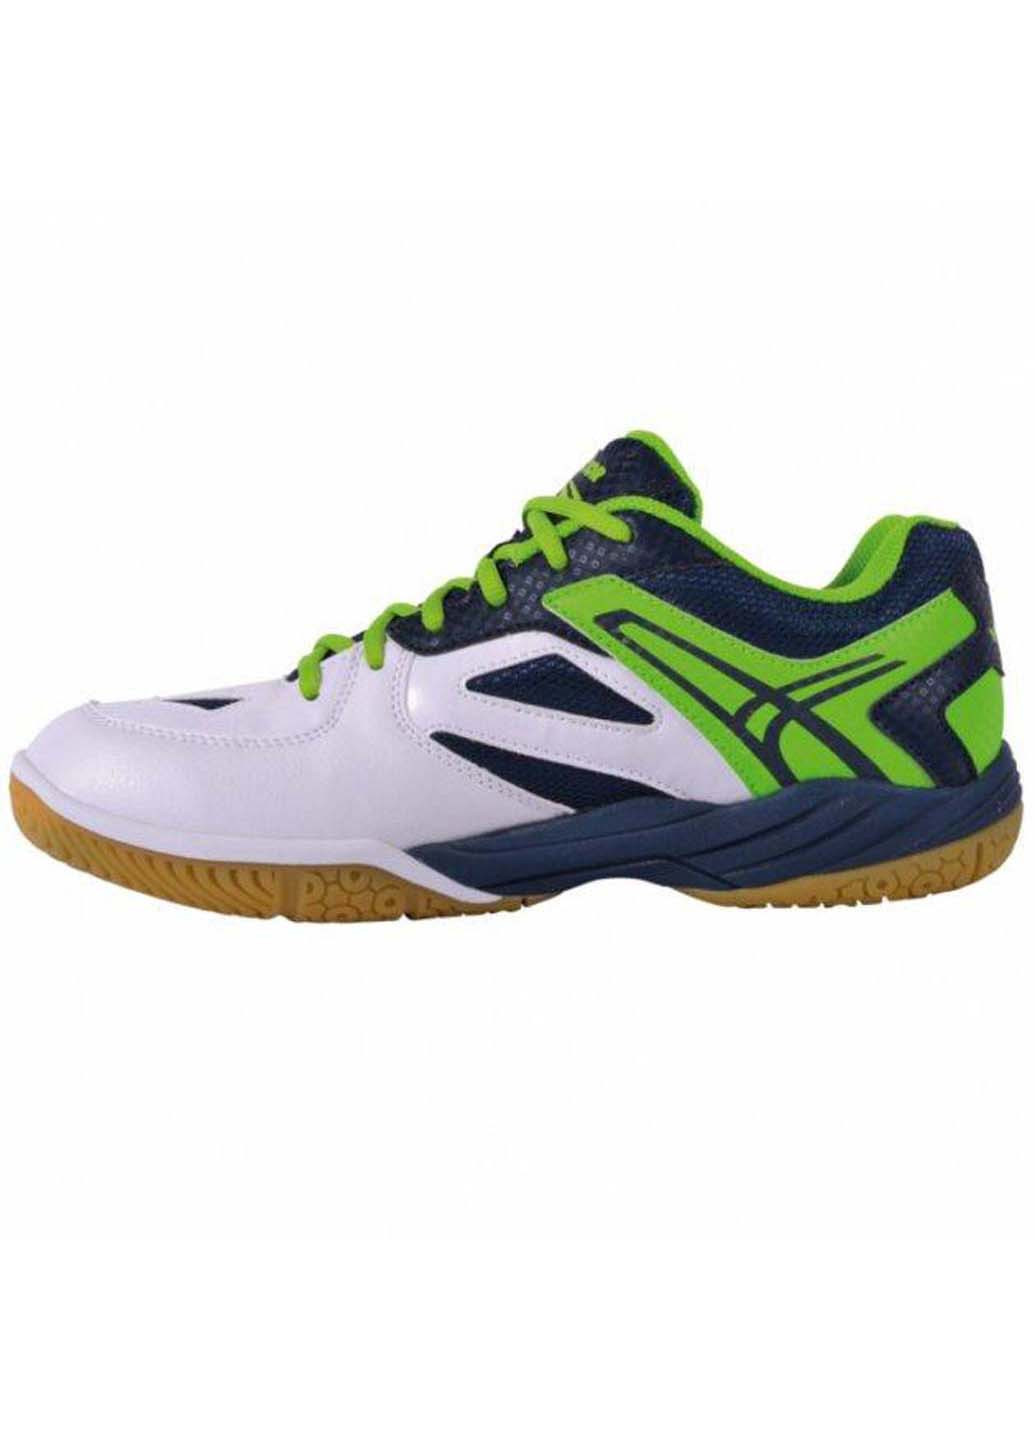 Цветные демисезонные кроссовки для сквоша Victor A501 Indoor